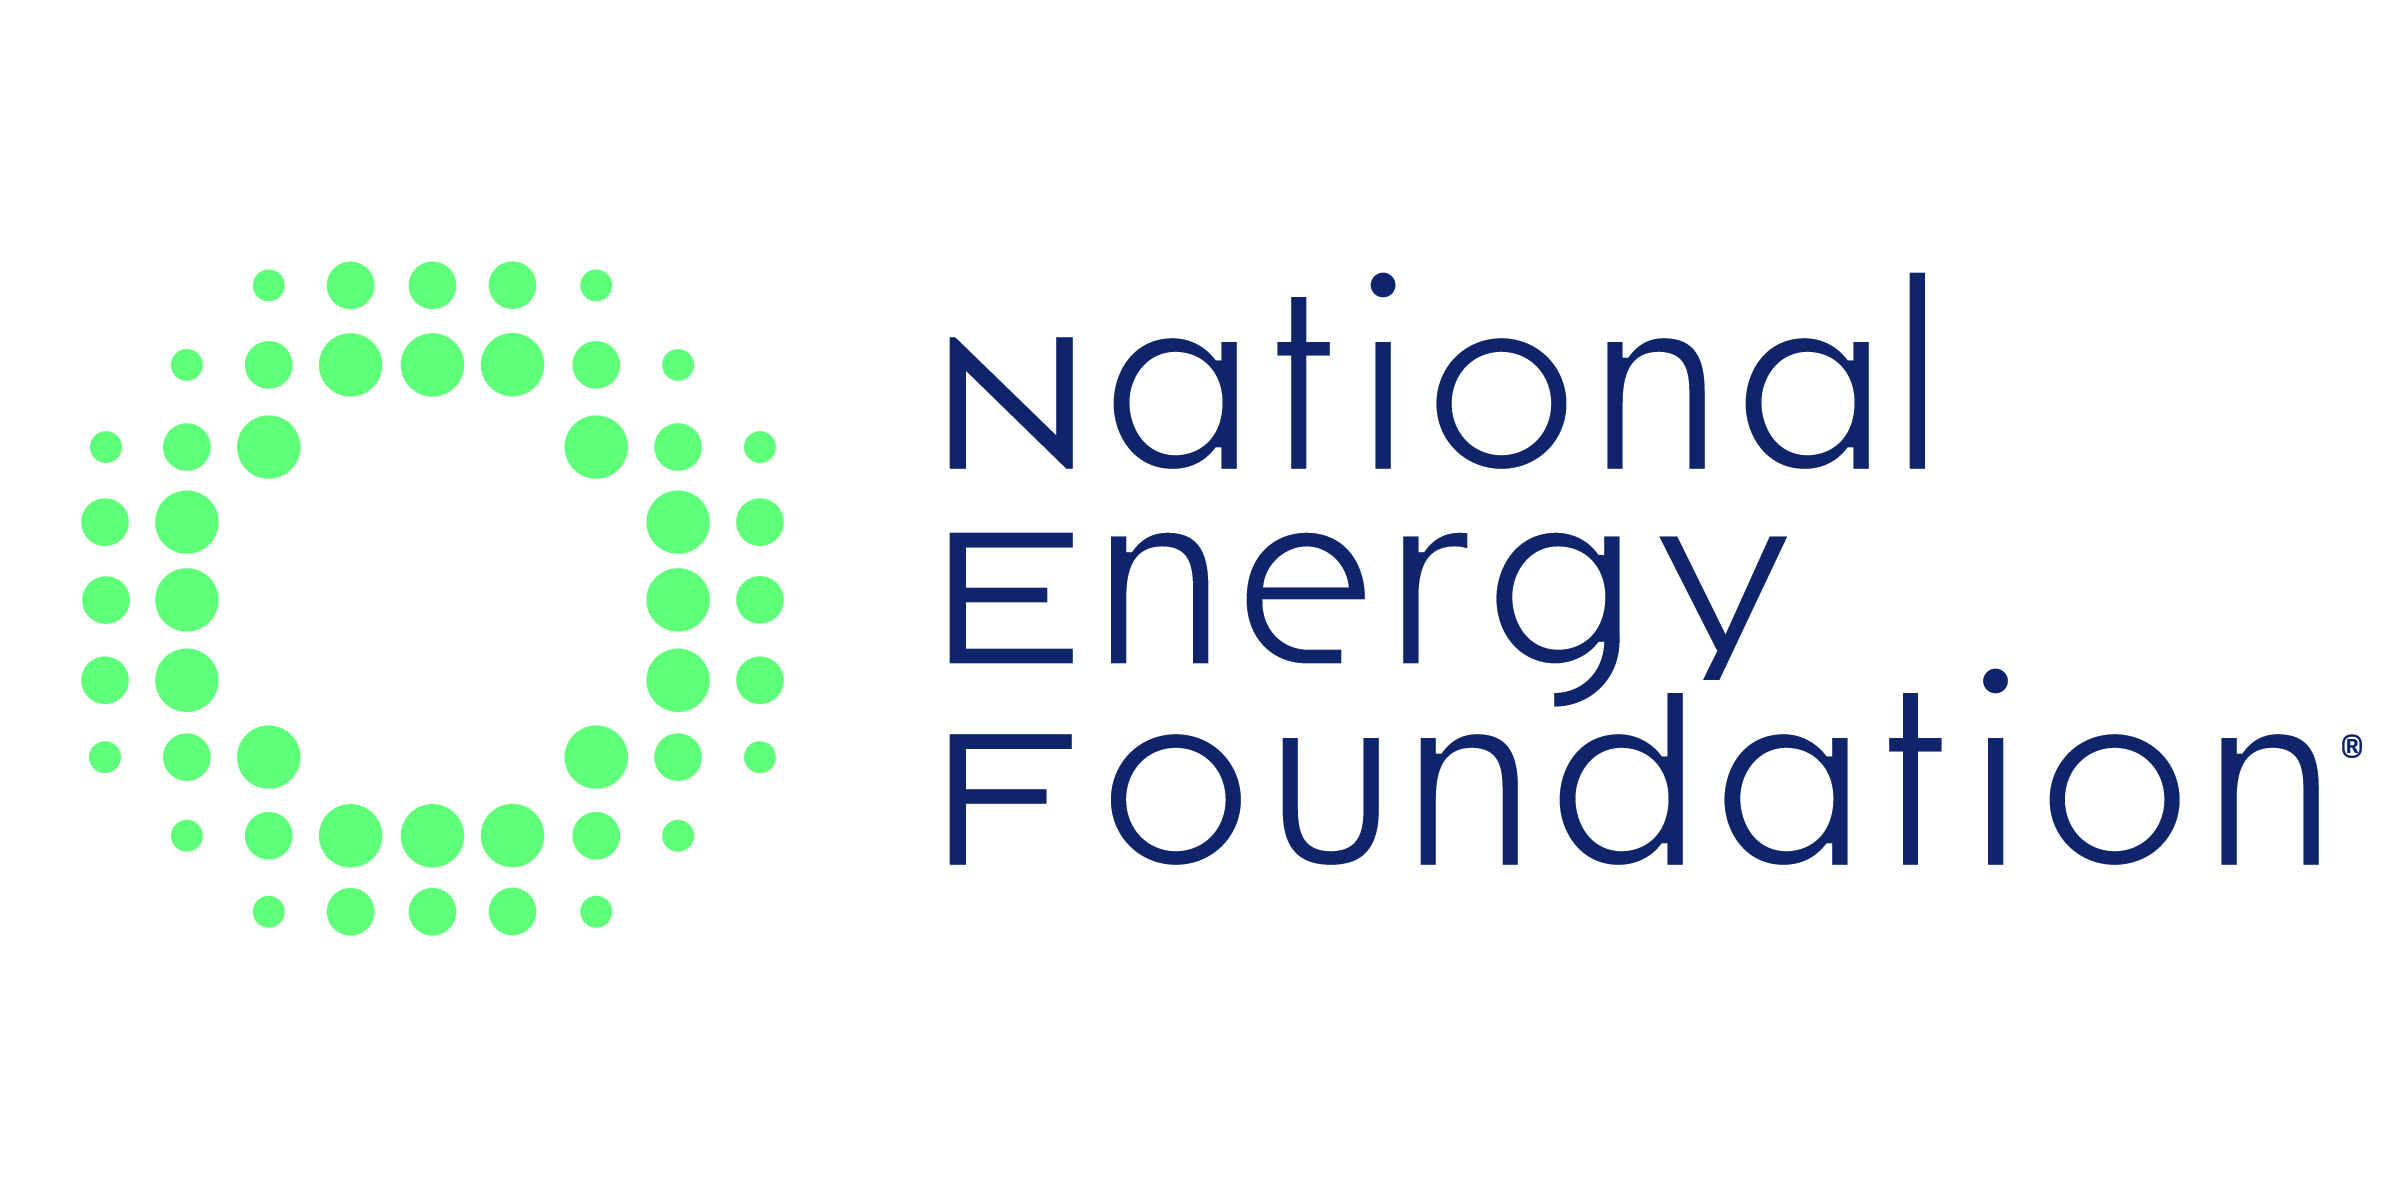 National Energy Foundation